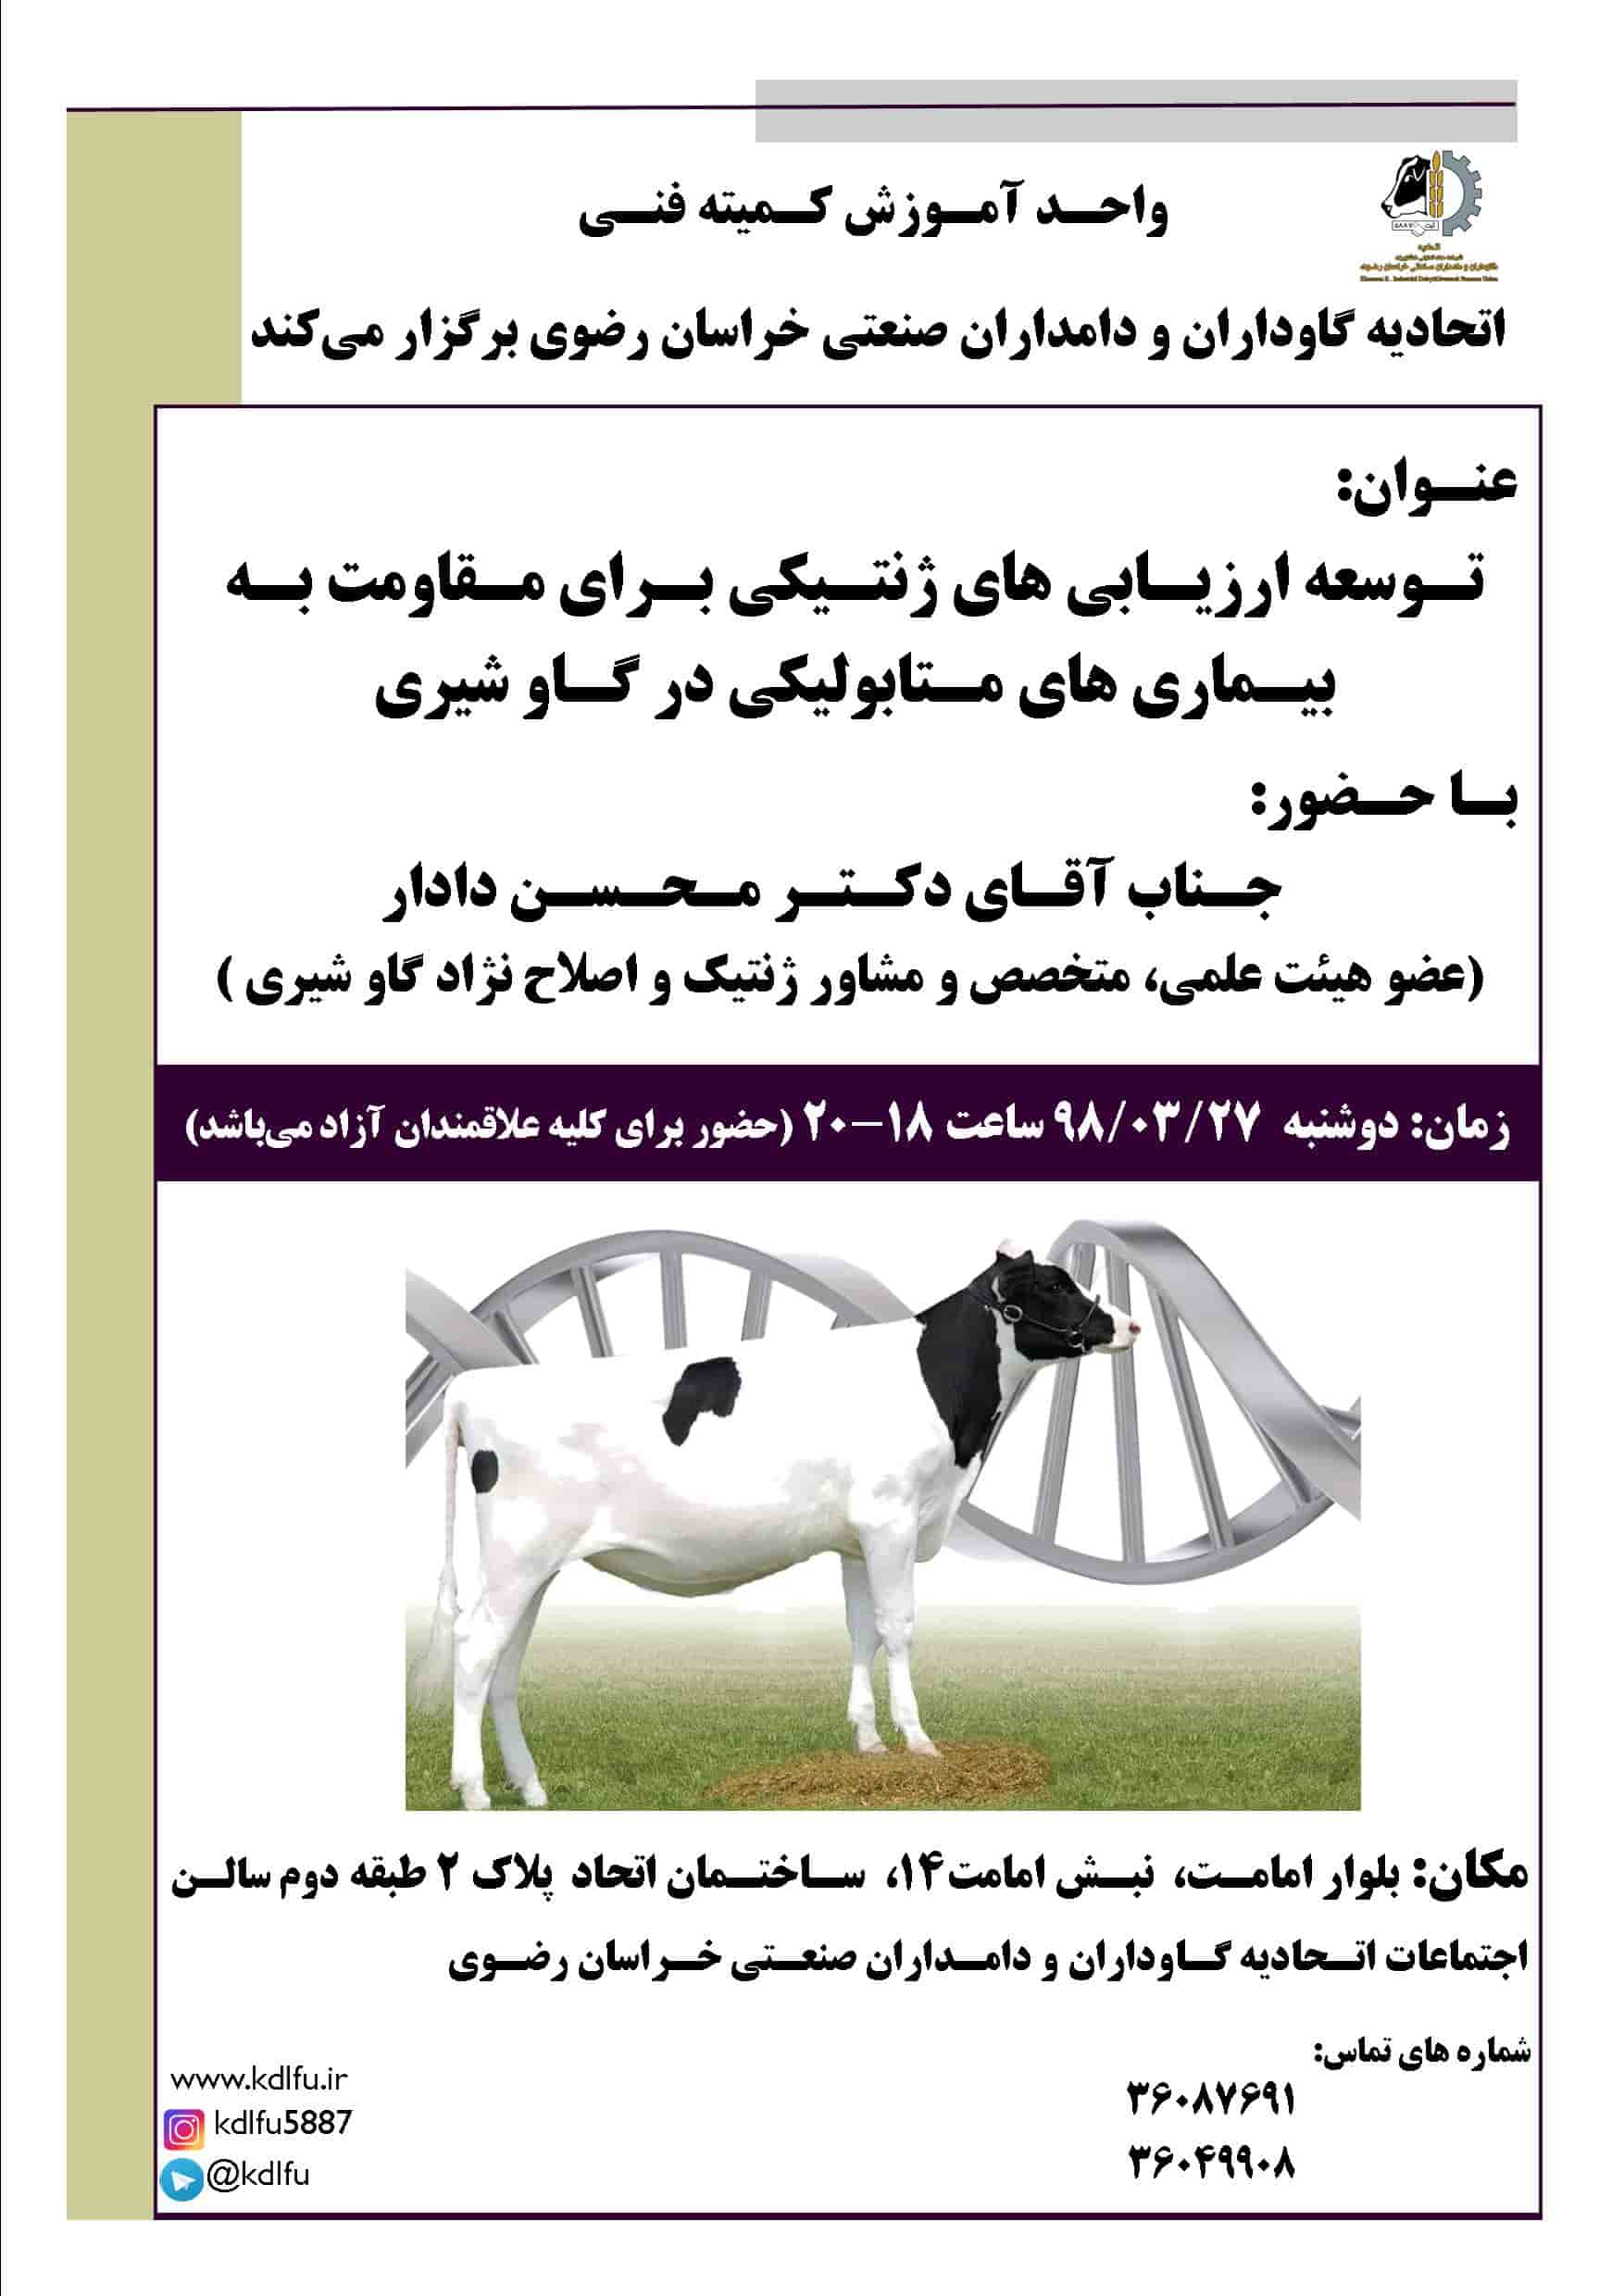 کلاس آموزشی توسعه ارزیابی های ژنتیکی برای مقاومت به بیماری های متابولیکی در گاو شیری